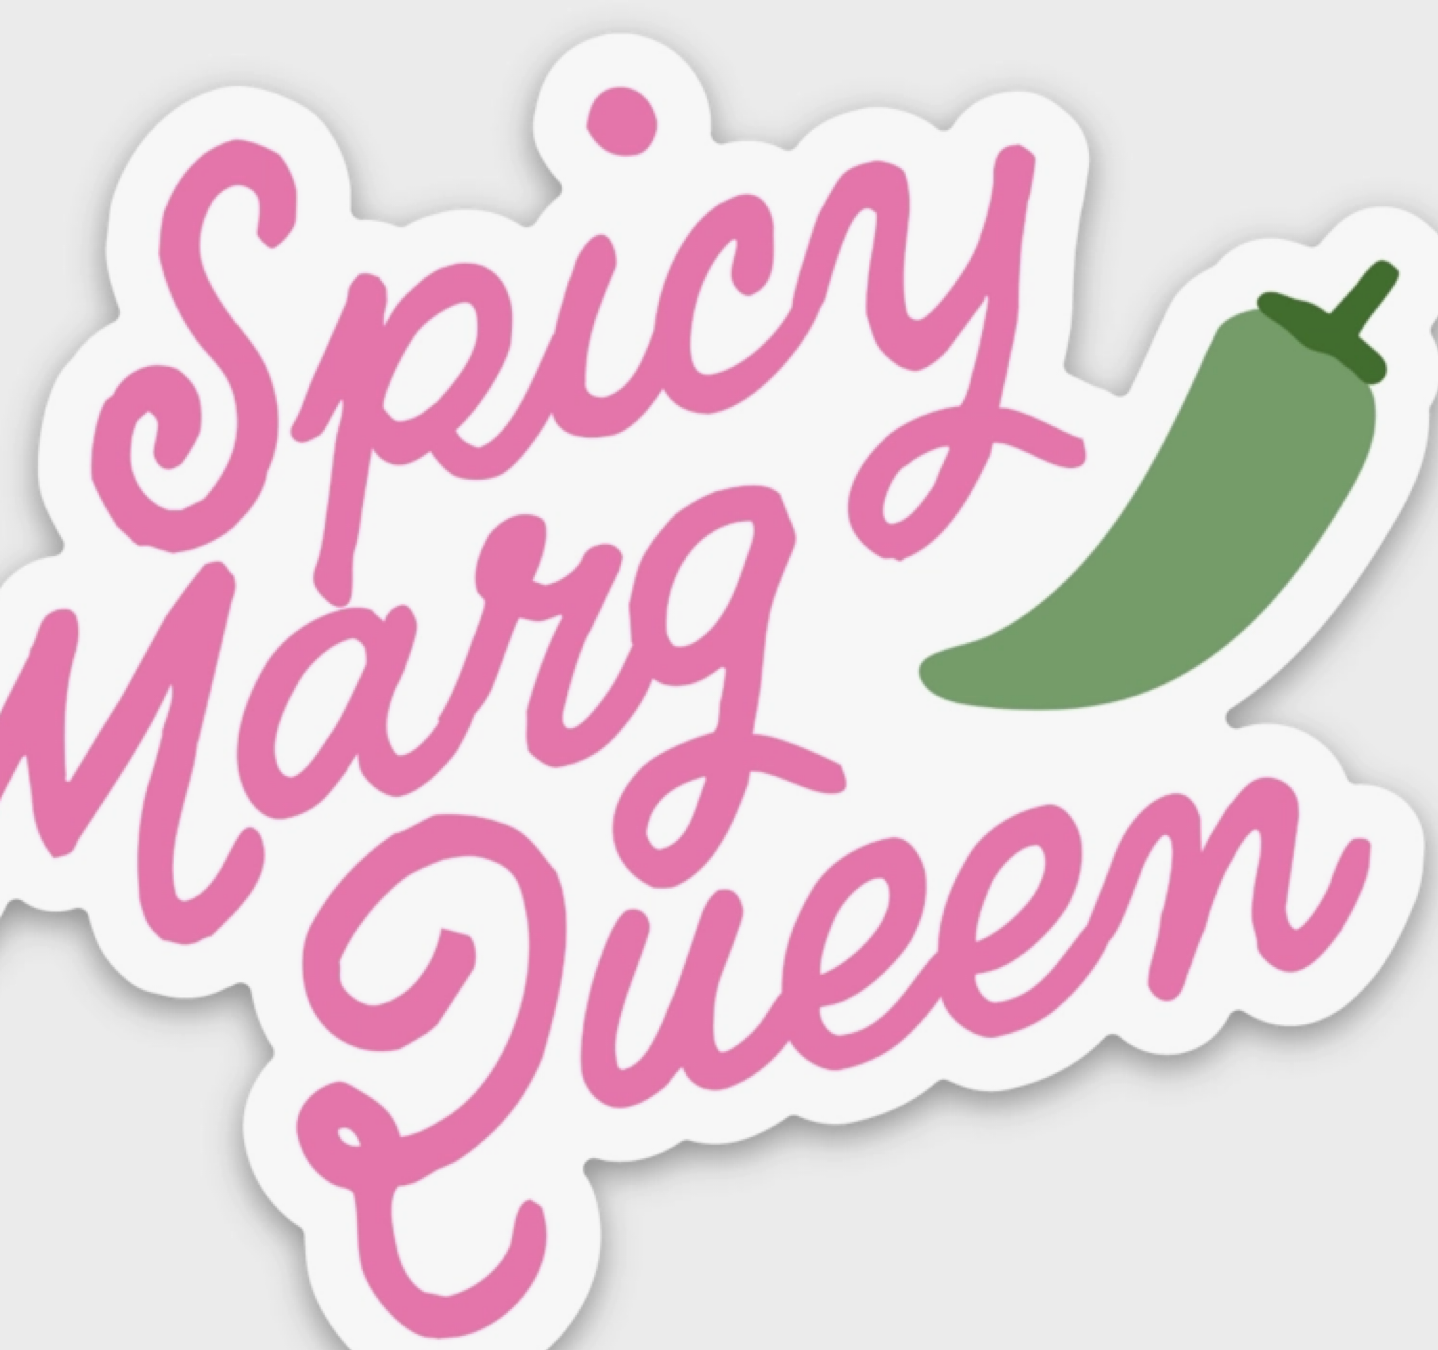 I love my Queen' Sticker